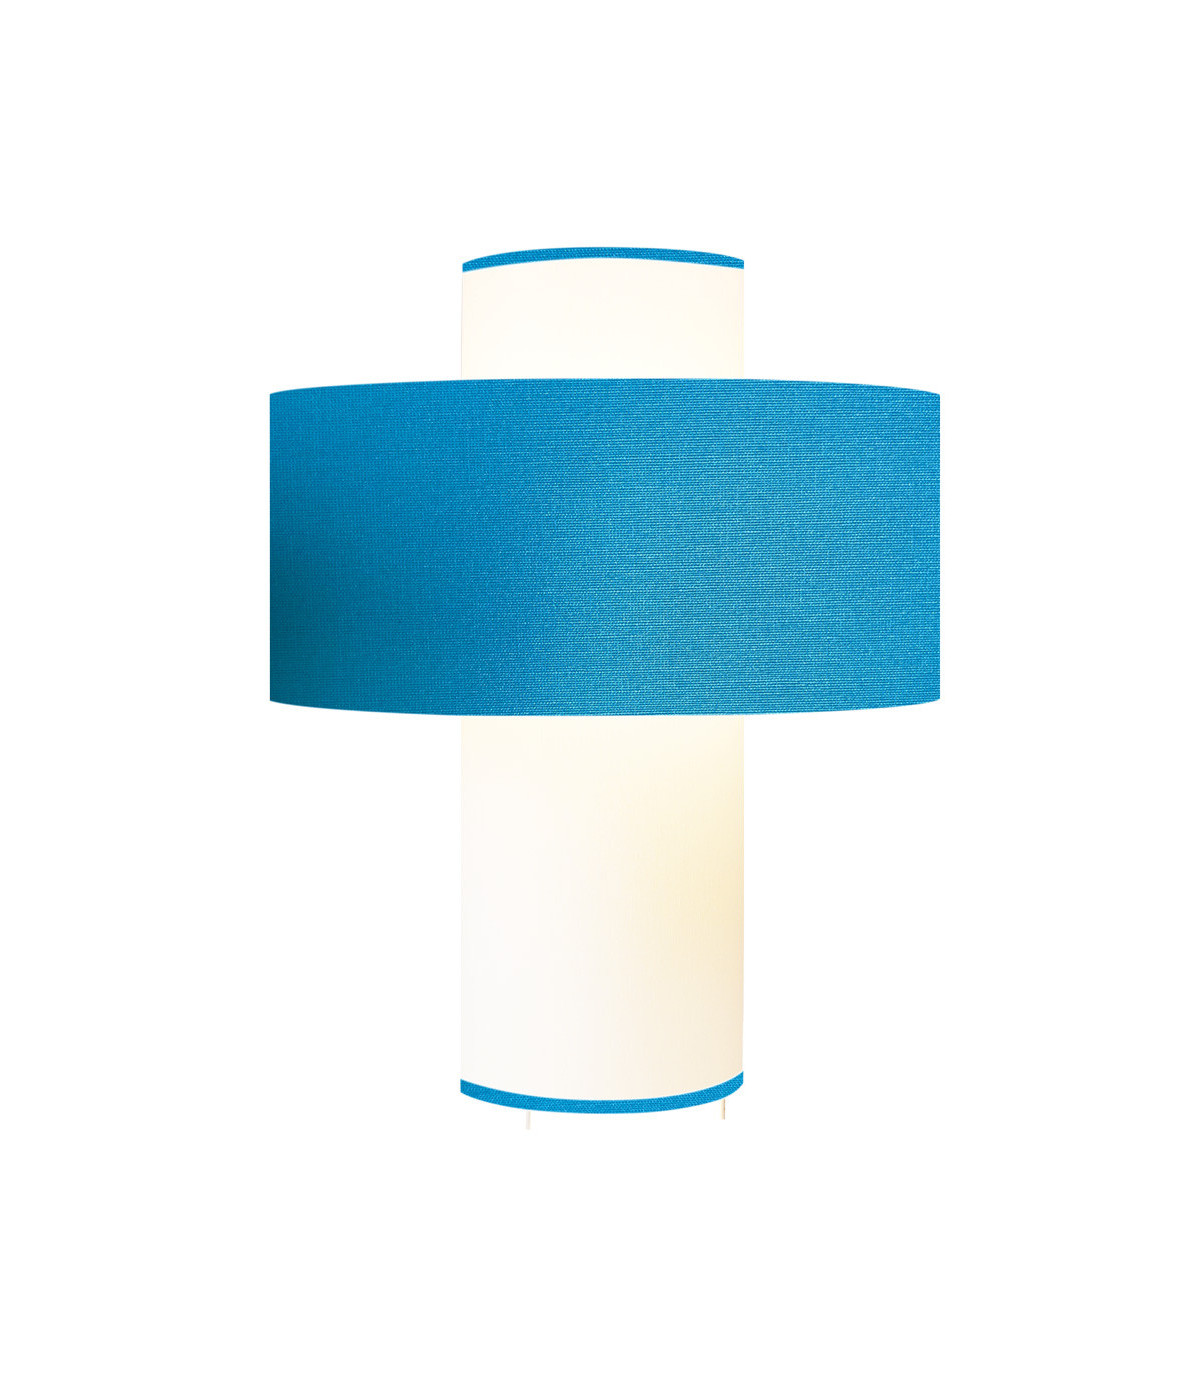 Lampe bleu turquoise D 35 cm